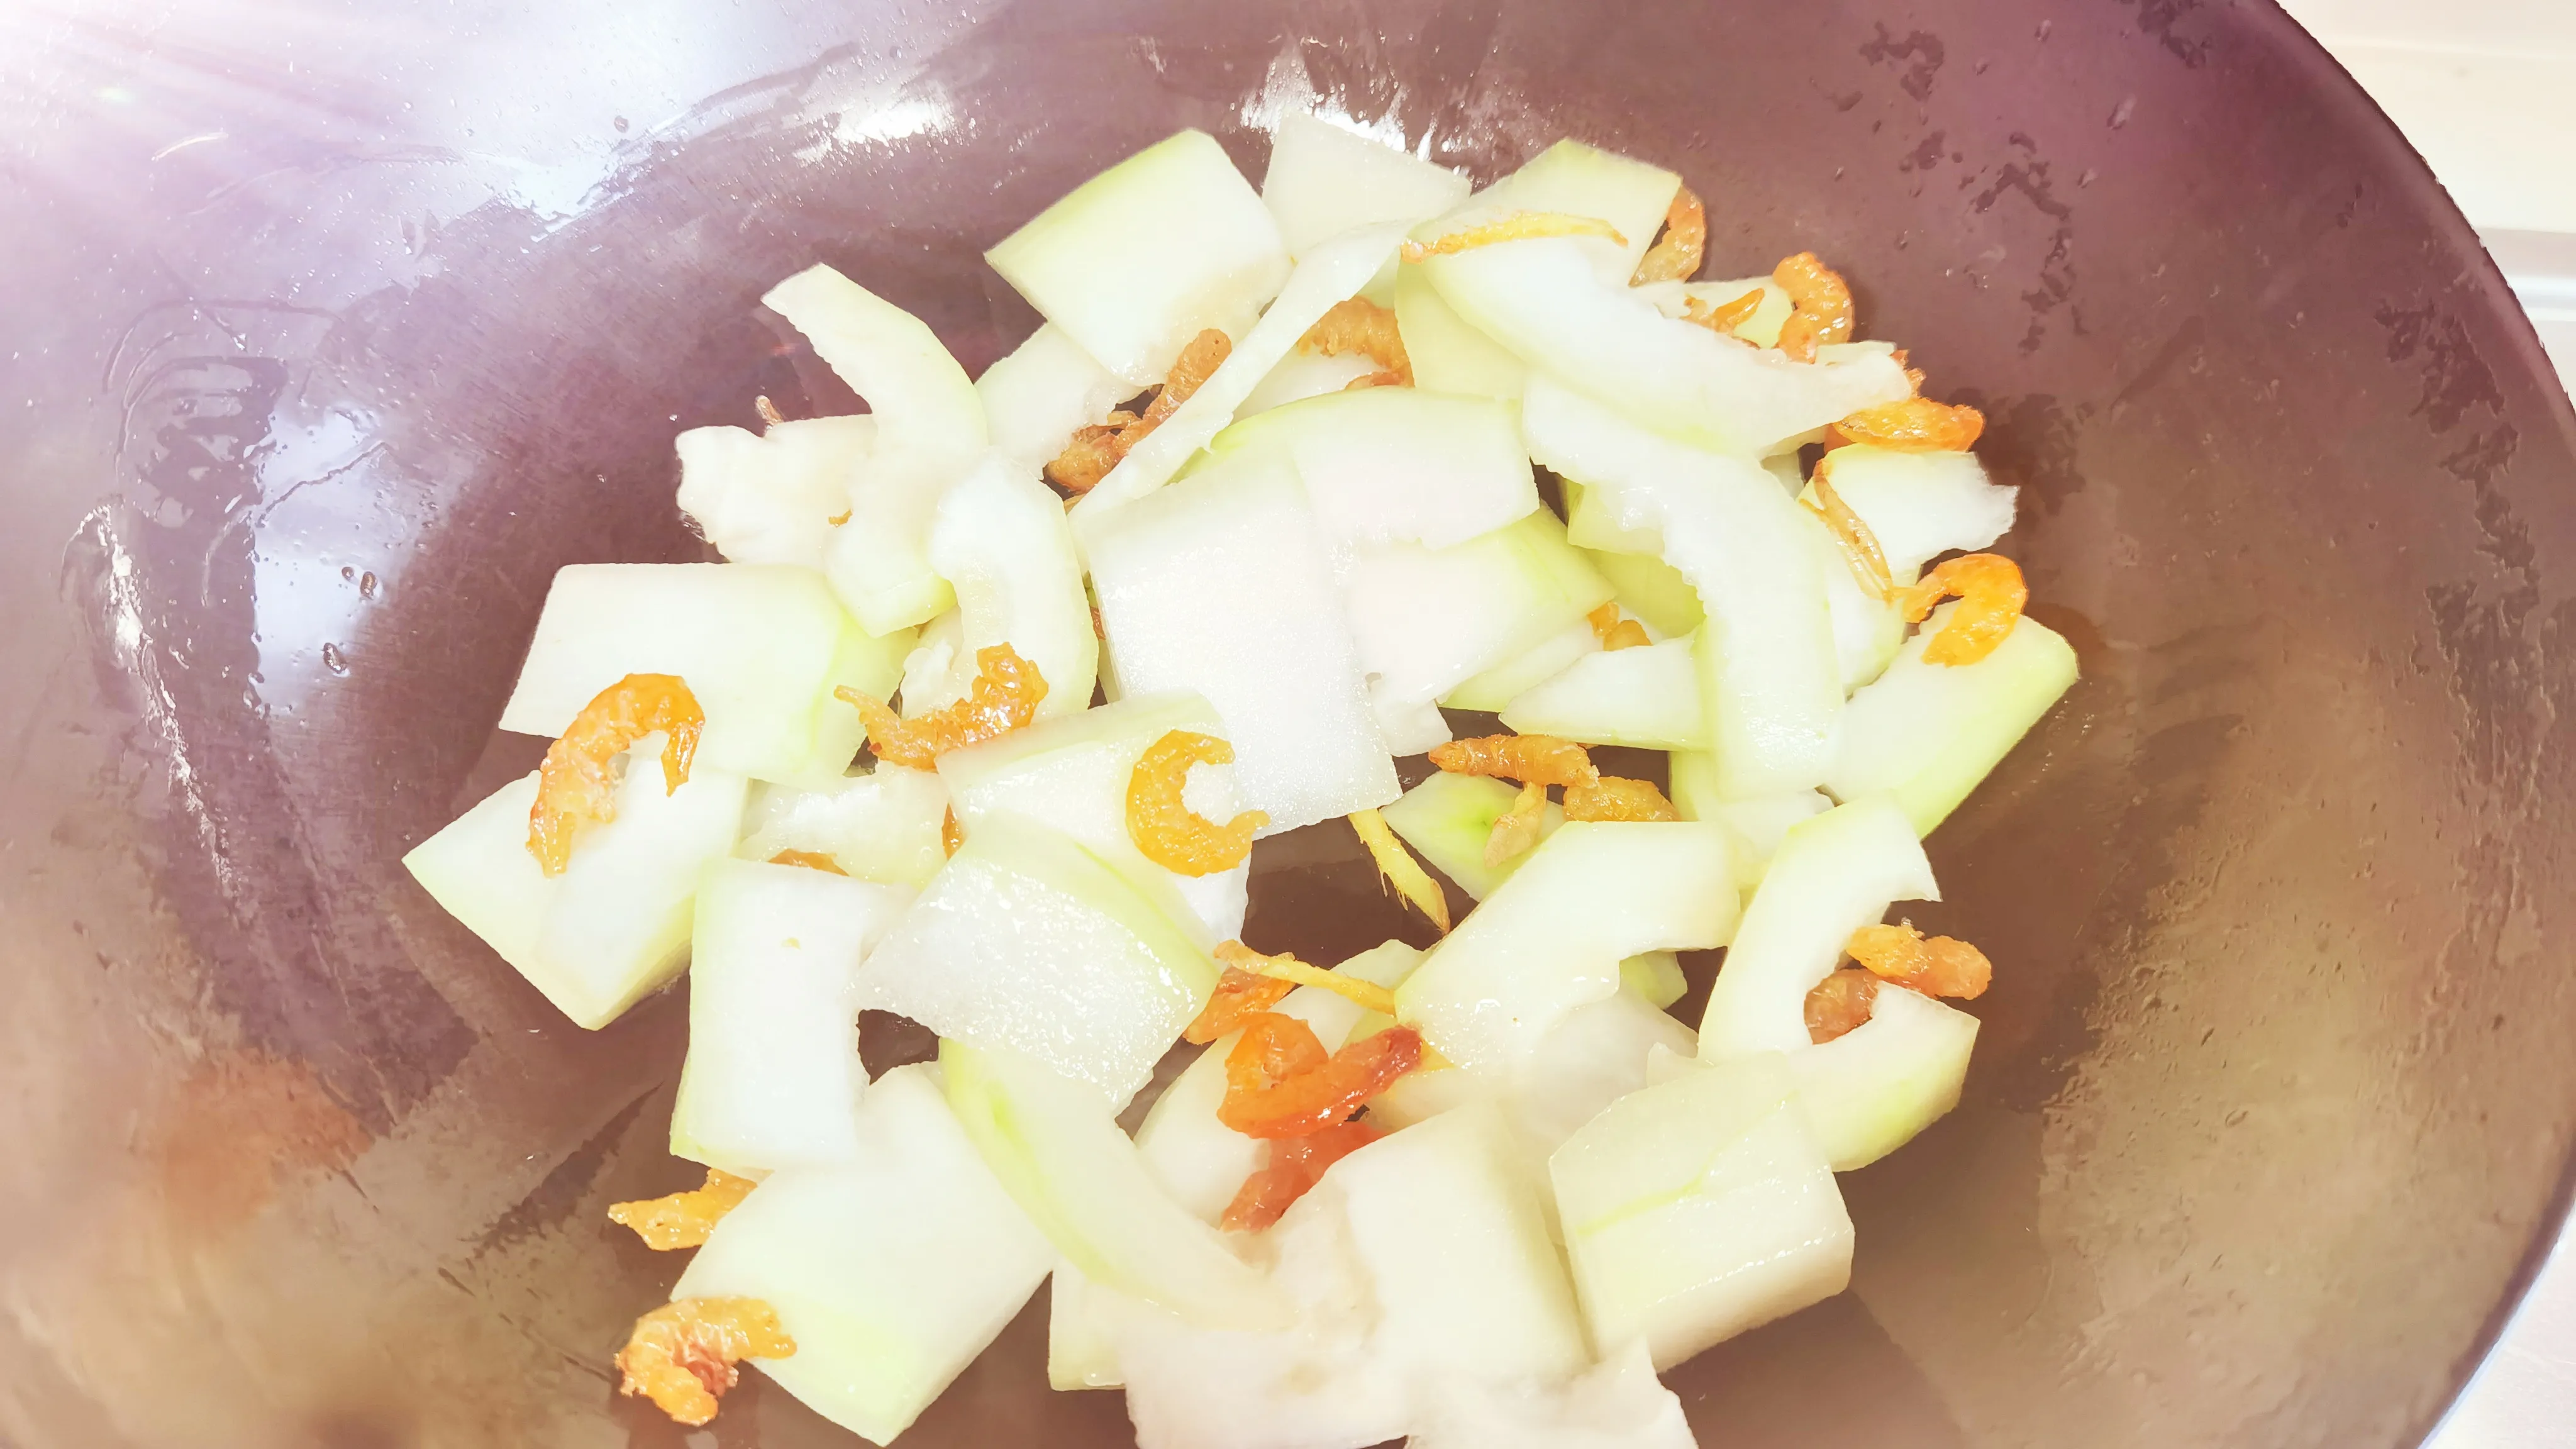 「冬瓜海米汤」鲜甜可口 低脂减肥消水肿 夏天一定要多喝这个汤